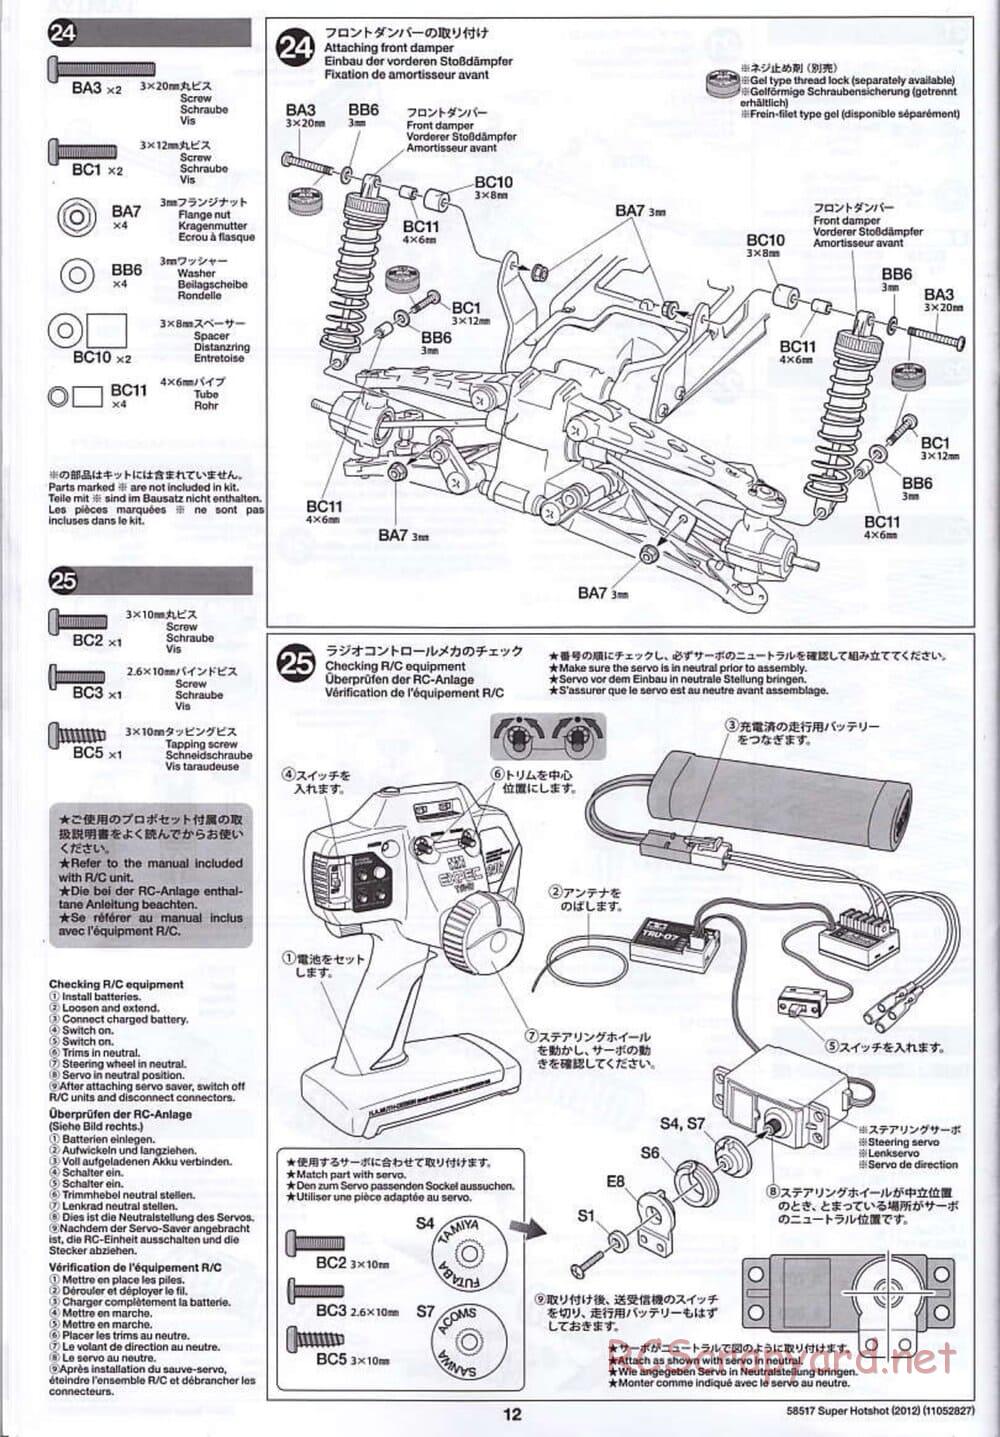 Tamiya - Super Hotshot 2012 - HS Chassis - Manual - Page 12